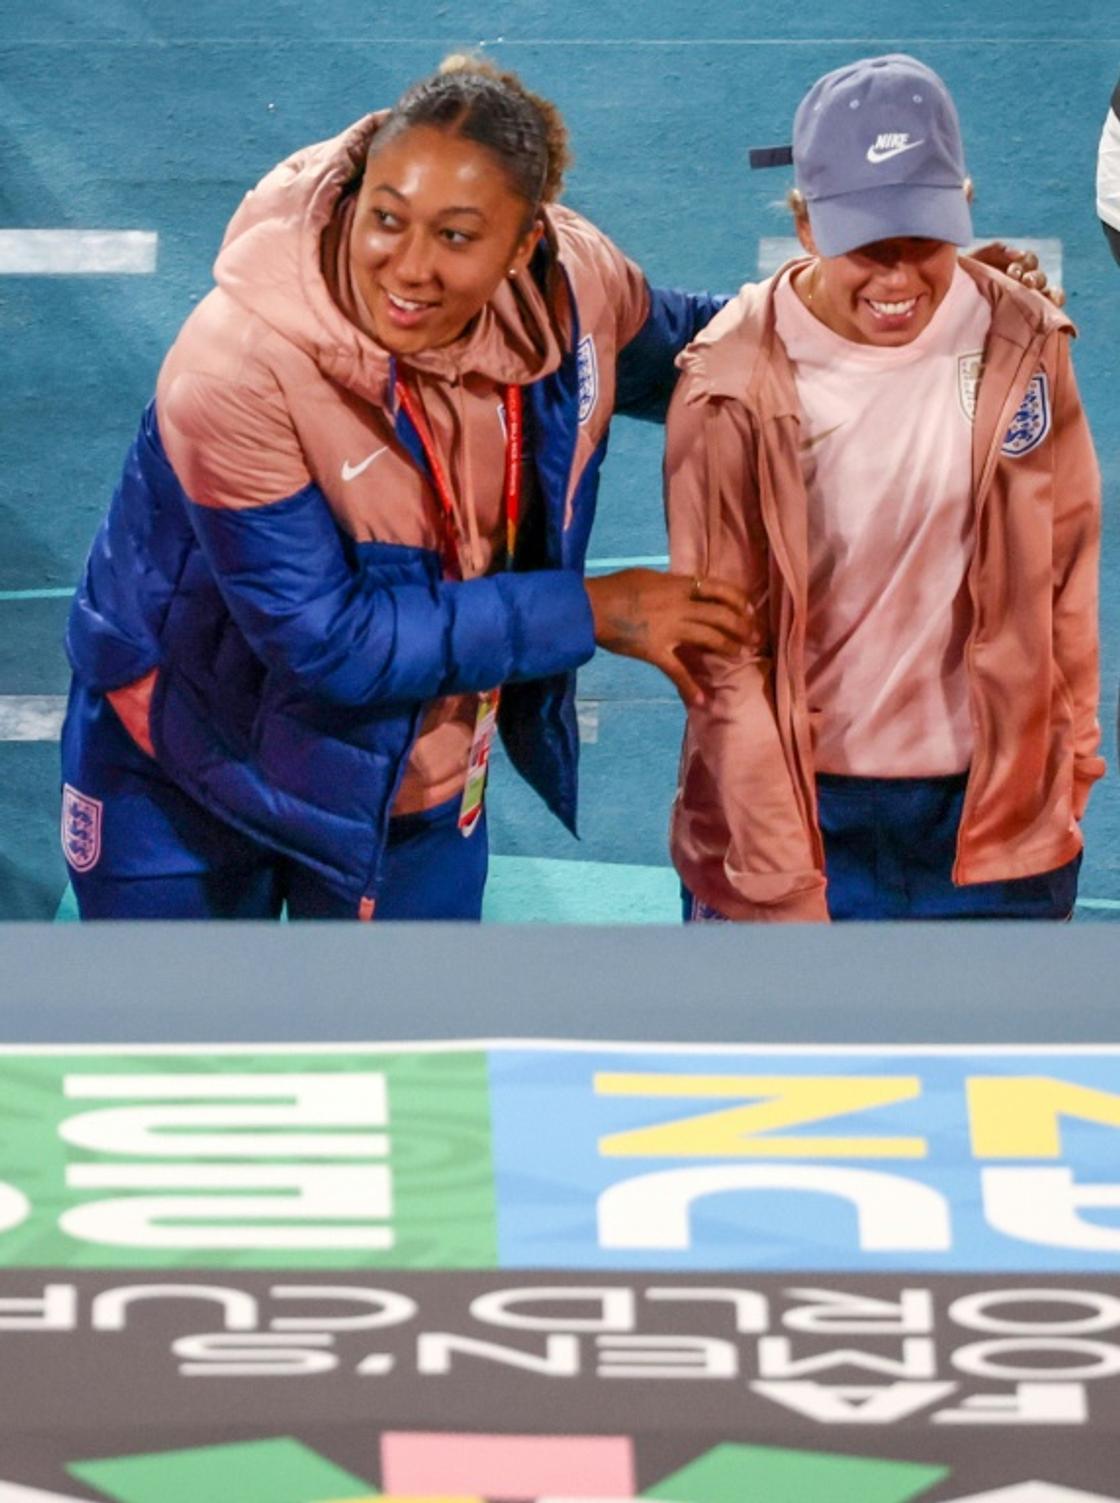 La joueuse anglaise Lauren James (à gauche) marche avec son coéquipier Jordan Nobbs